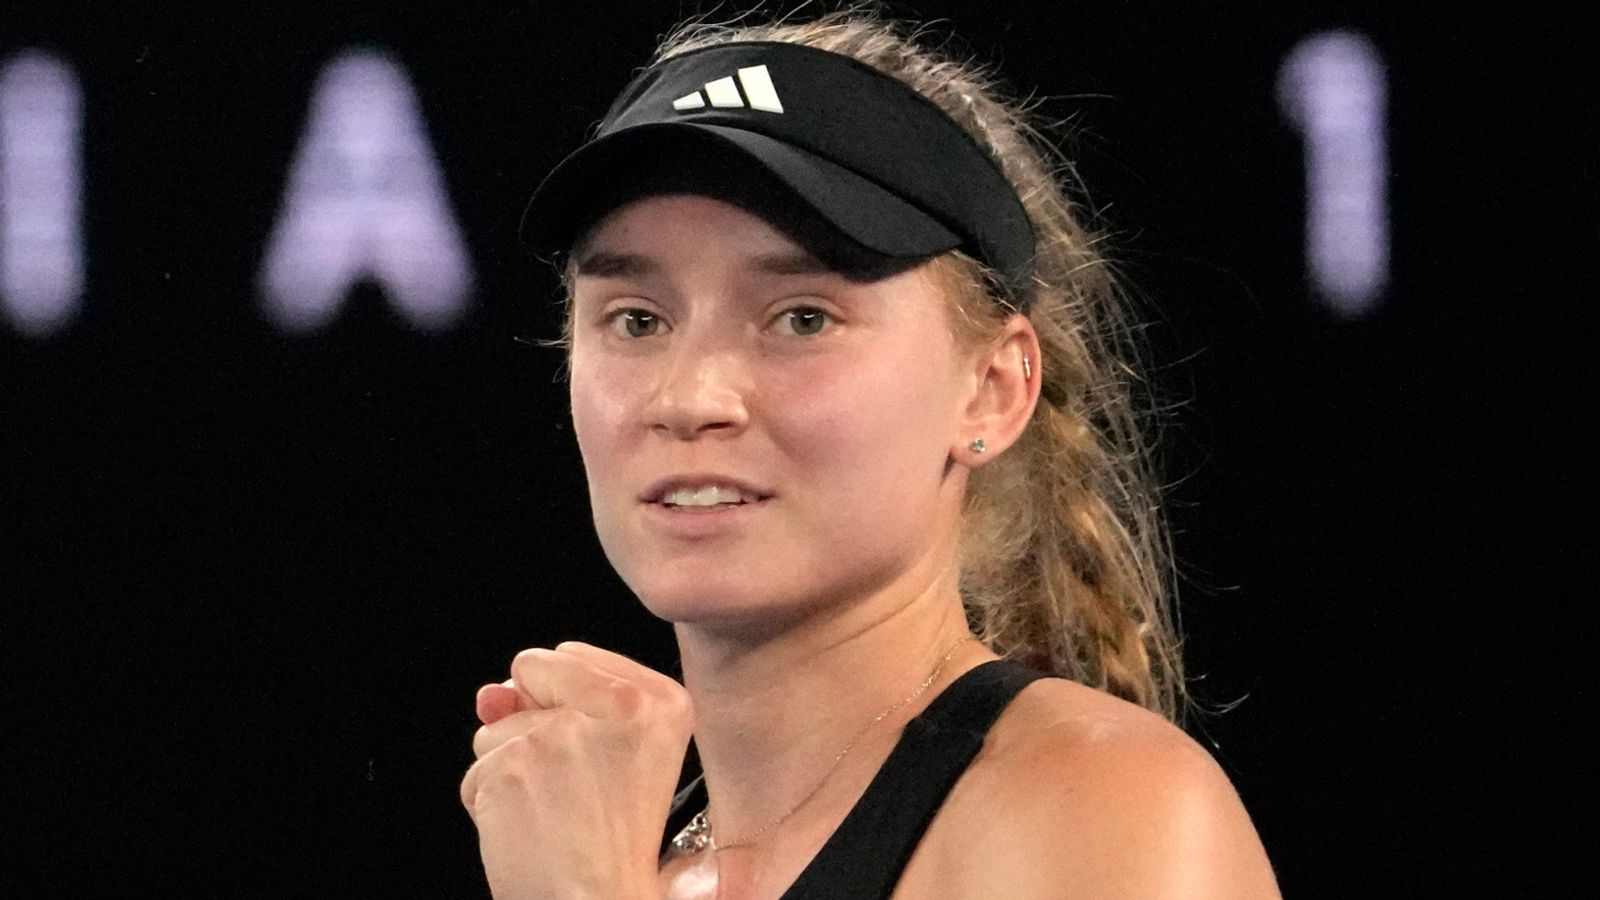 Rybakina – Azarenka tip Australian Open semi-final 26.01.2023